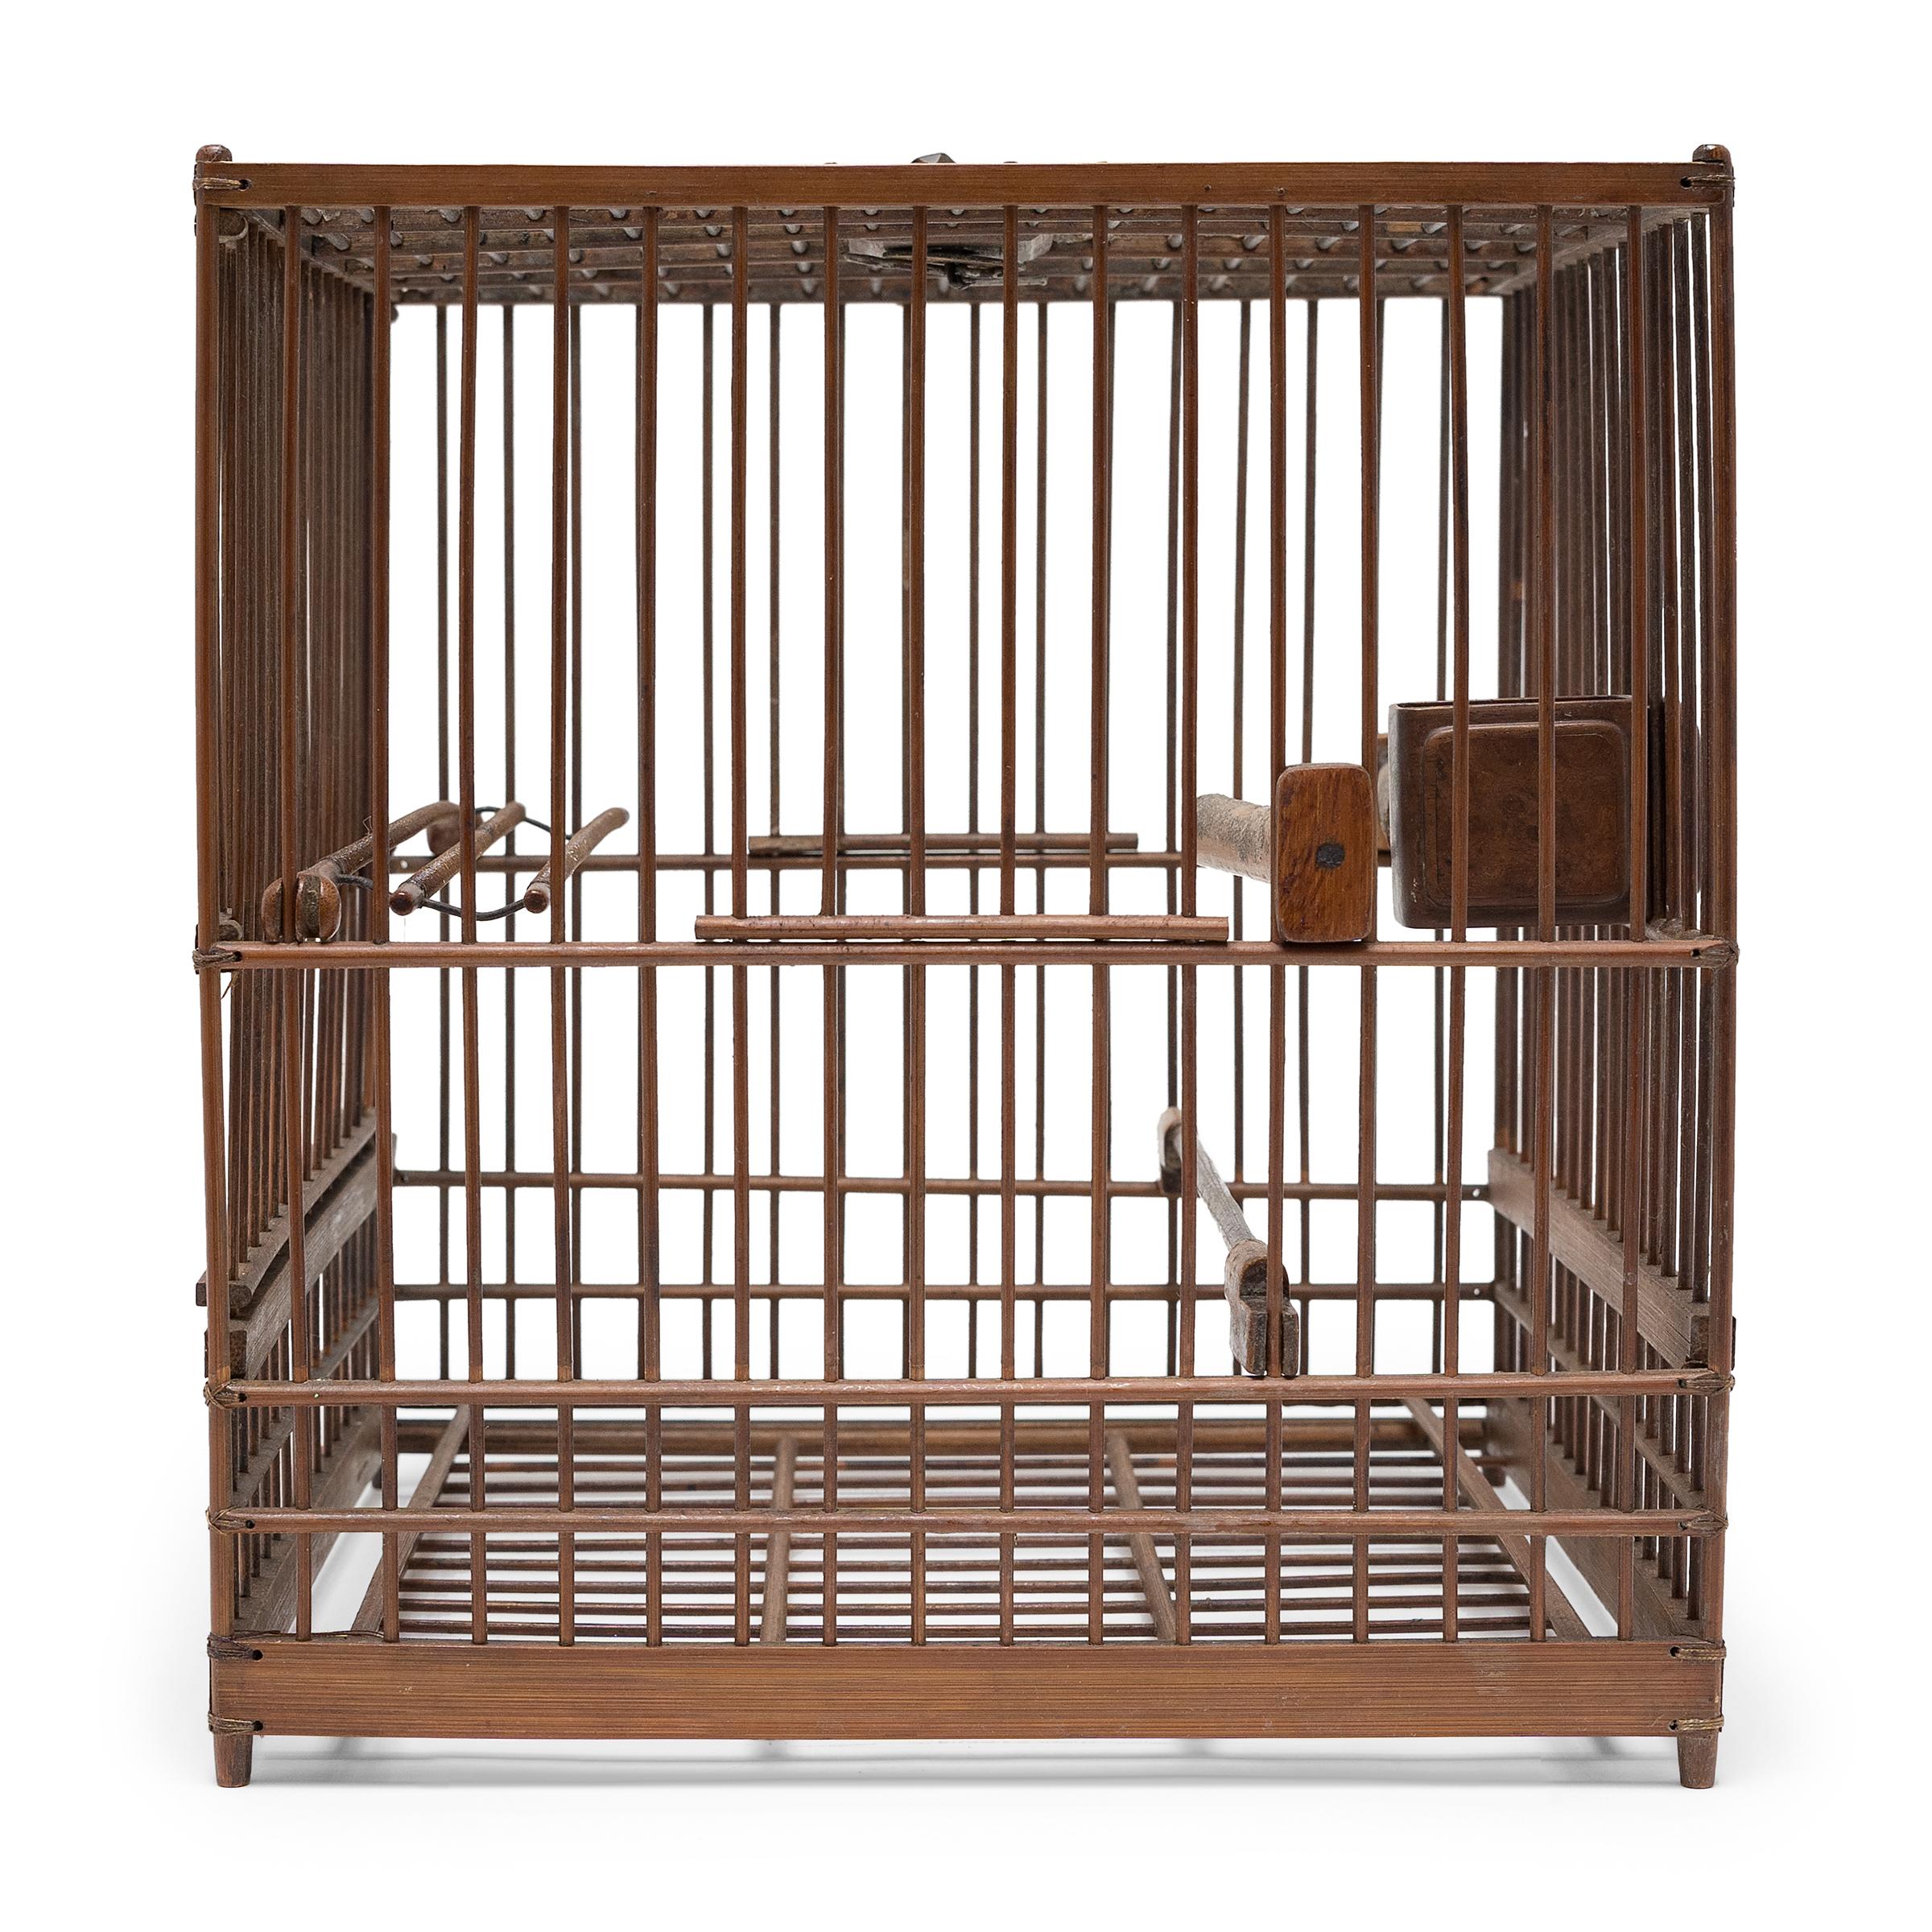 Cette délicate volière du XIXe siècle abritait autrefois le petit oiseau de compagnie d'un aristocrate de la dynastie Qing. La cage carrée est fabriquée de manière experte à partir de fines tiges de bambou et maintenue aux angles par du fil ciré. La